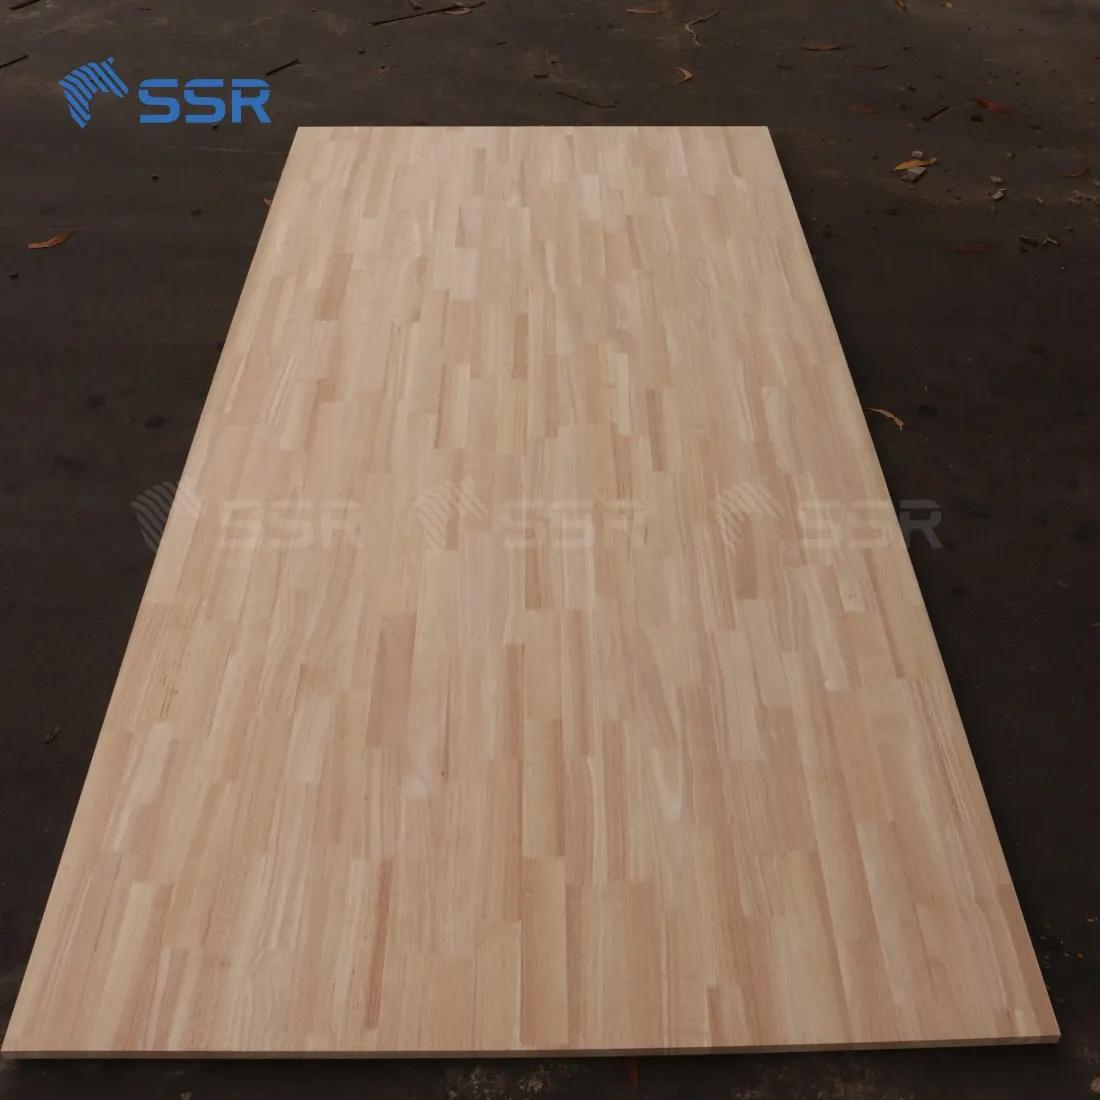 SSR VINA - Rubber Wood Finger Joint Board - 2440x1220 mm Rubber wood hevea wood hevea rubberwood finger joint board